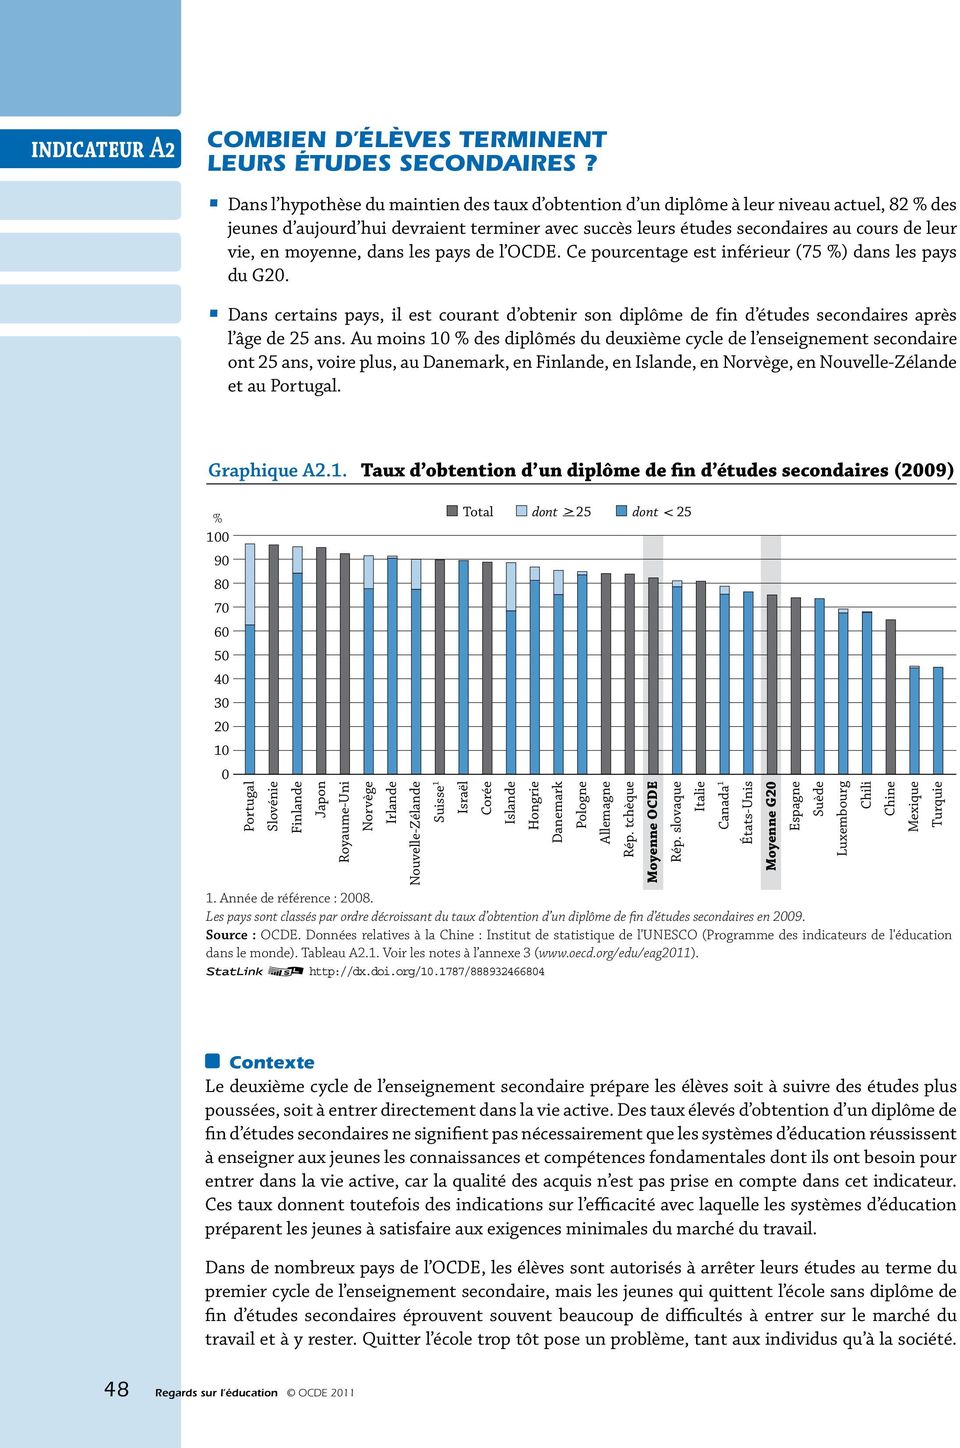 moyenne, dans les pays de l OCDE. Ce pourcentage est inférieur (75 %) dans les pays du G20. Dans certains pays, il est courant d obtenir son diplôme de fin d études secondaires après l âge de 25 ans.